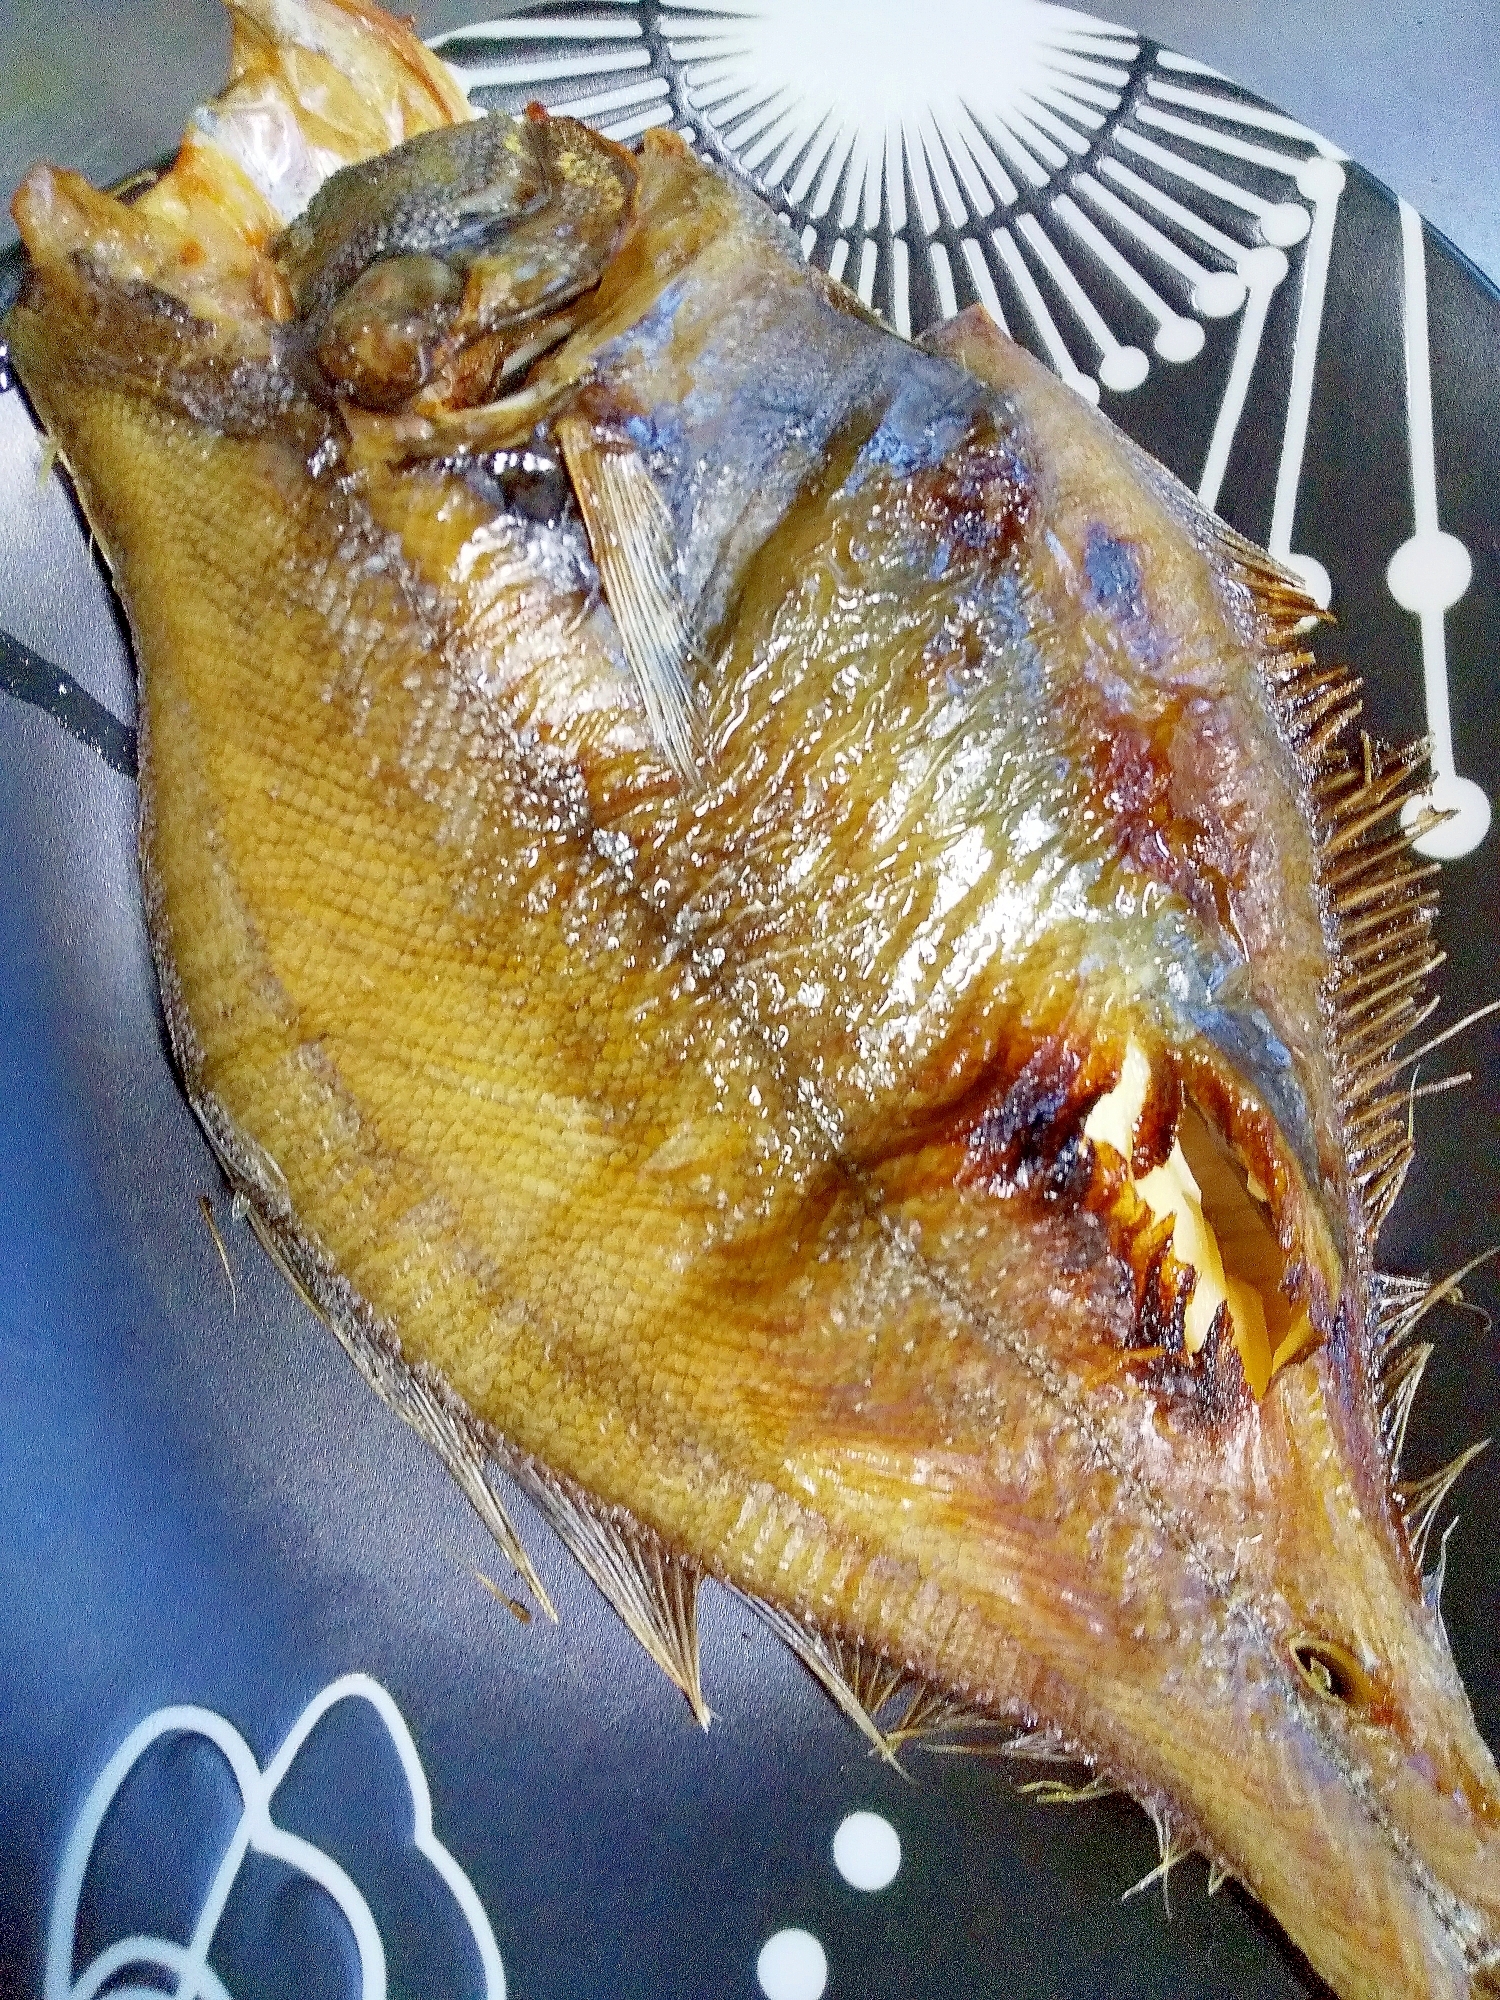 干宗八かれいの焼き魚